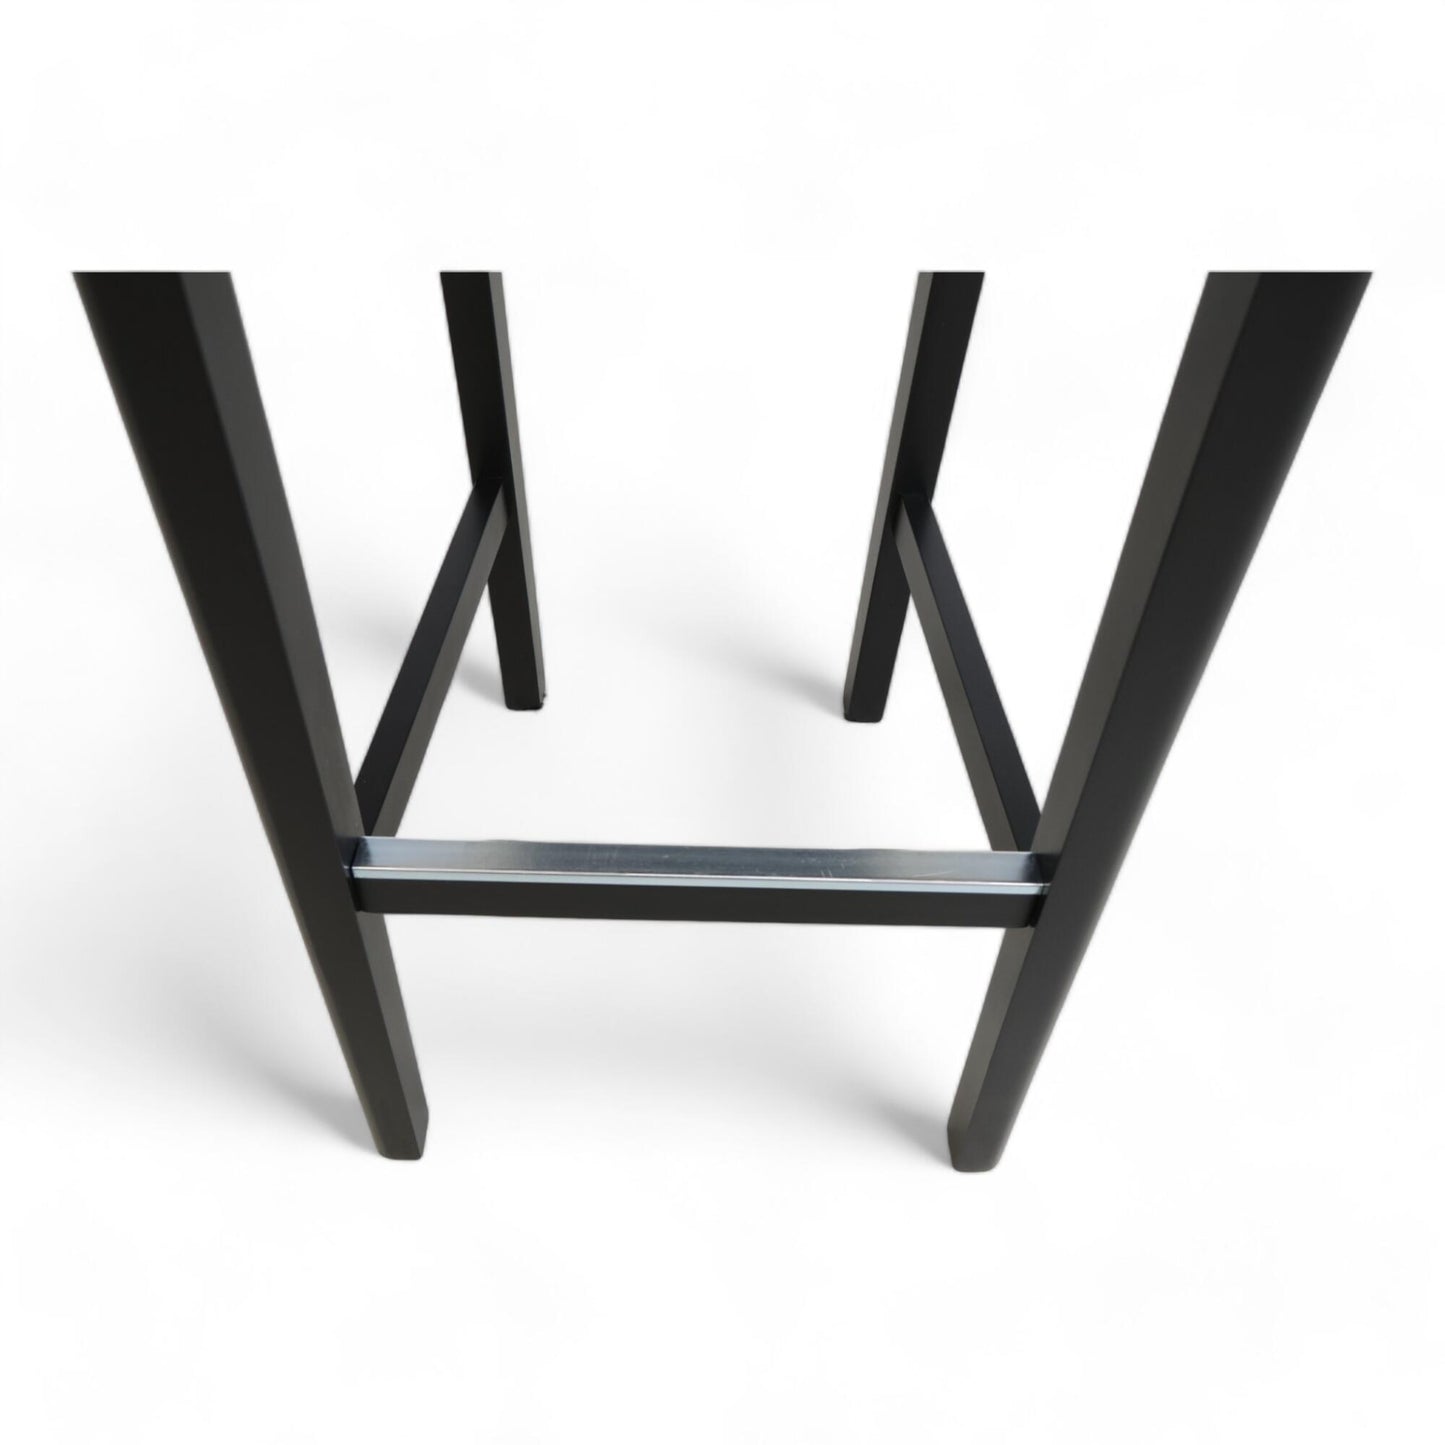 Nyrenset | IKEA Bergmund barstol i hvitt med svarte ben